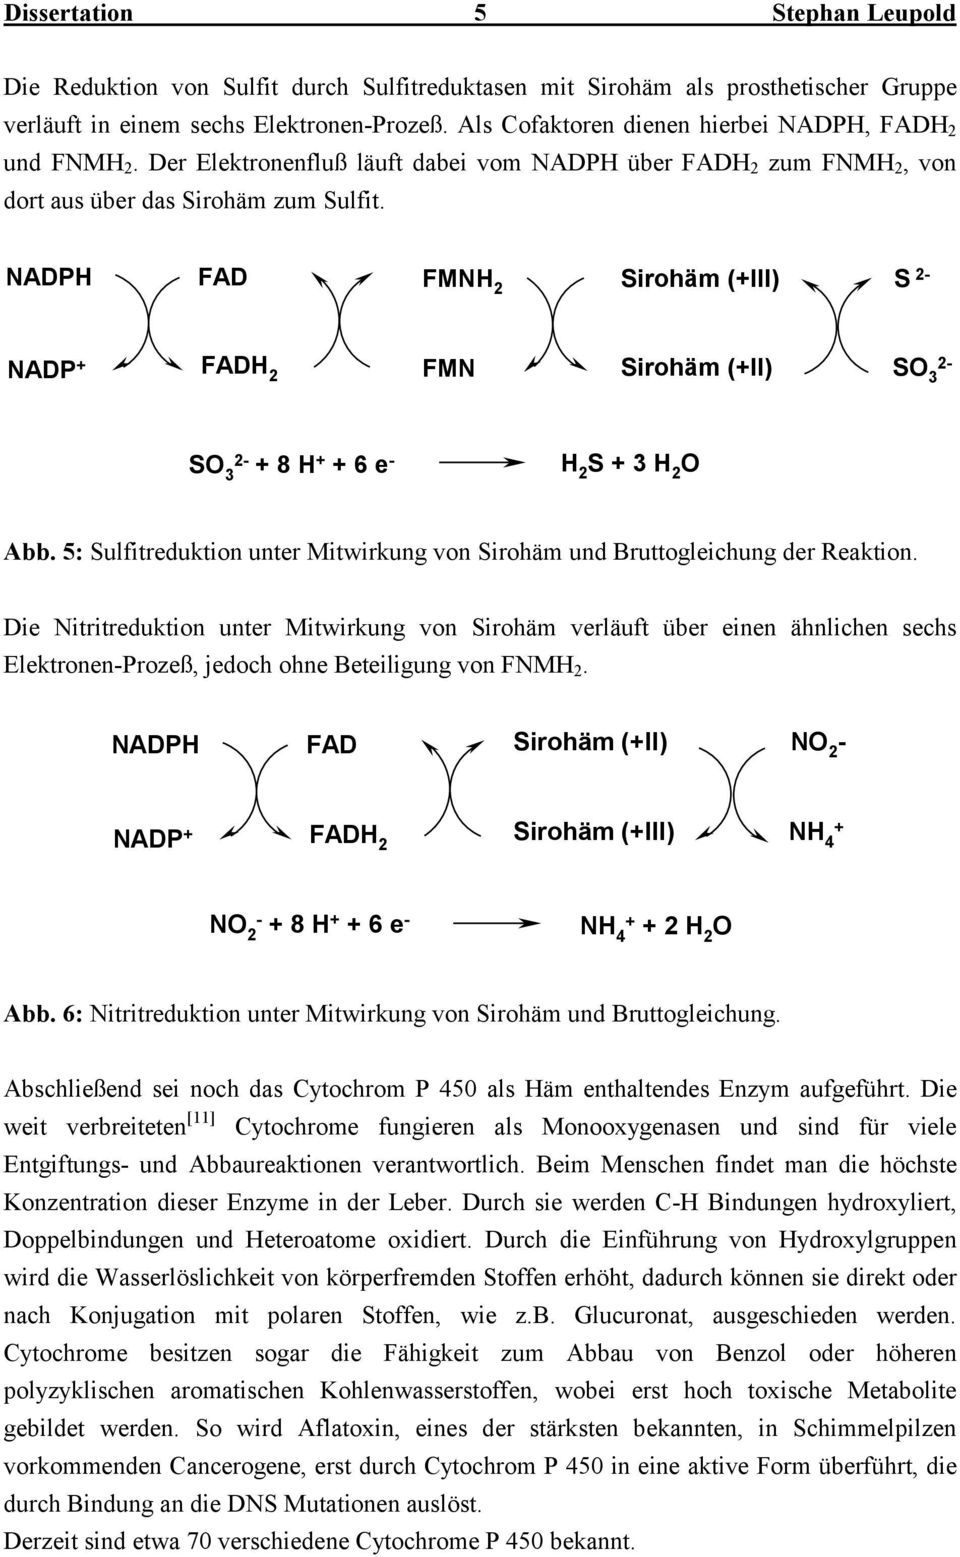 ADP FAD FM 2 irohäm (+III) 2- ADP + FAD 2 FM irohäm (+II) 3 2-3 2- + 8 + + 6 e - 2 + 3 2 Abb. 5: ulfitreduktion unter Mitwirkung von irohäm und Bruttogleichung der Reaktion.